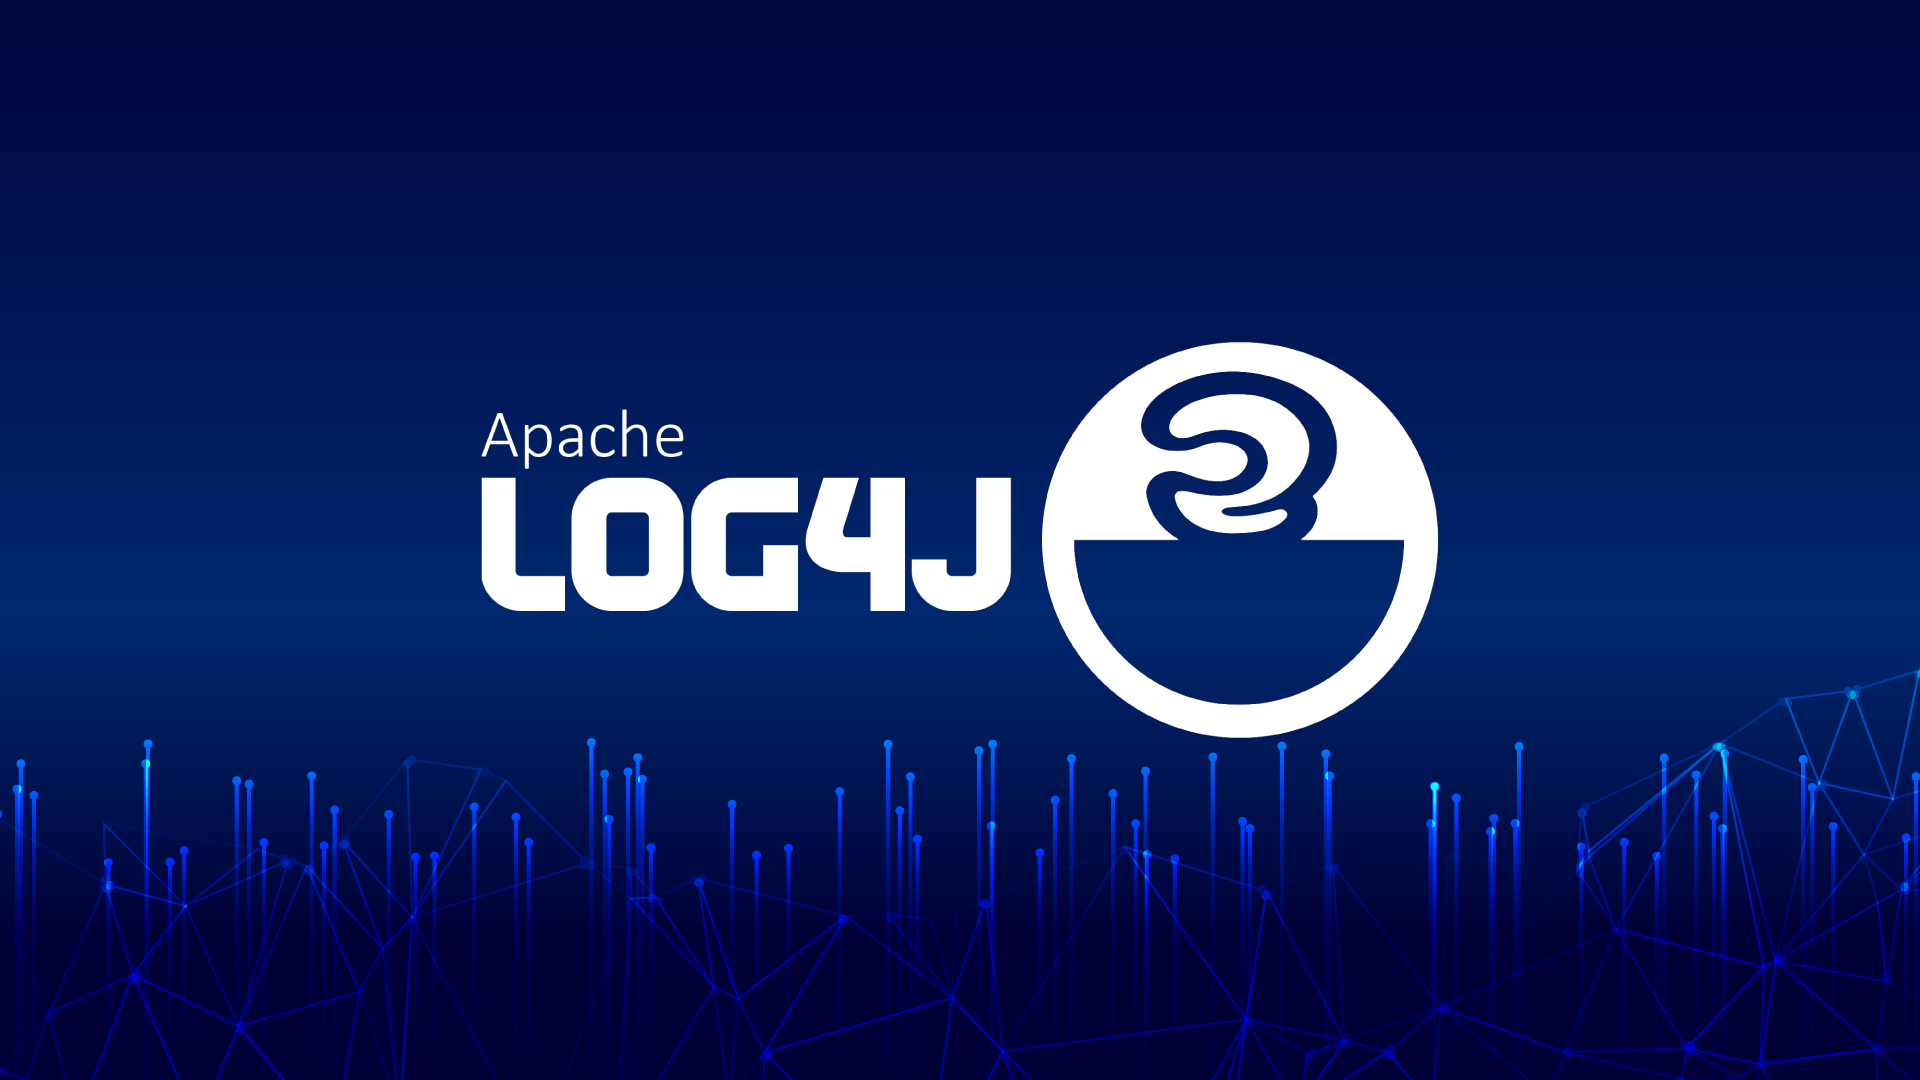 Исправленная 2 года назад уязвимость в Apache Log4j до сих пор актуальна для 38% приложений